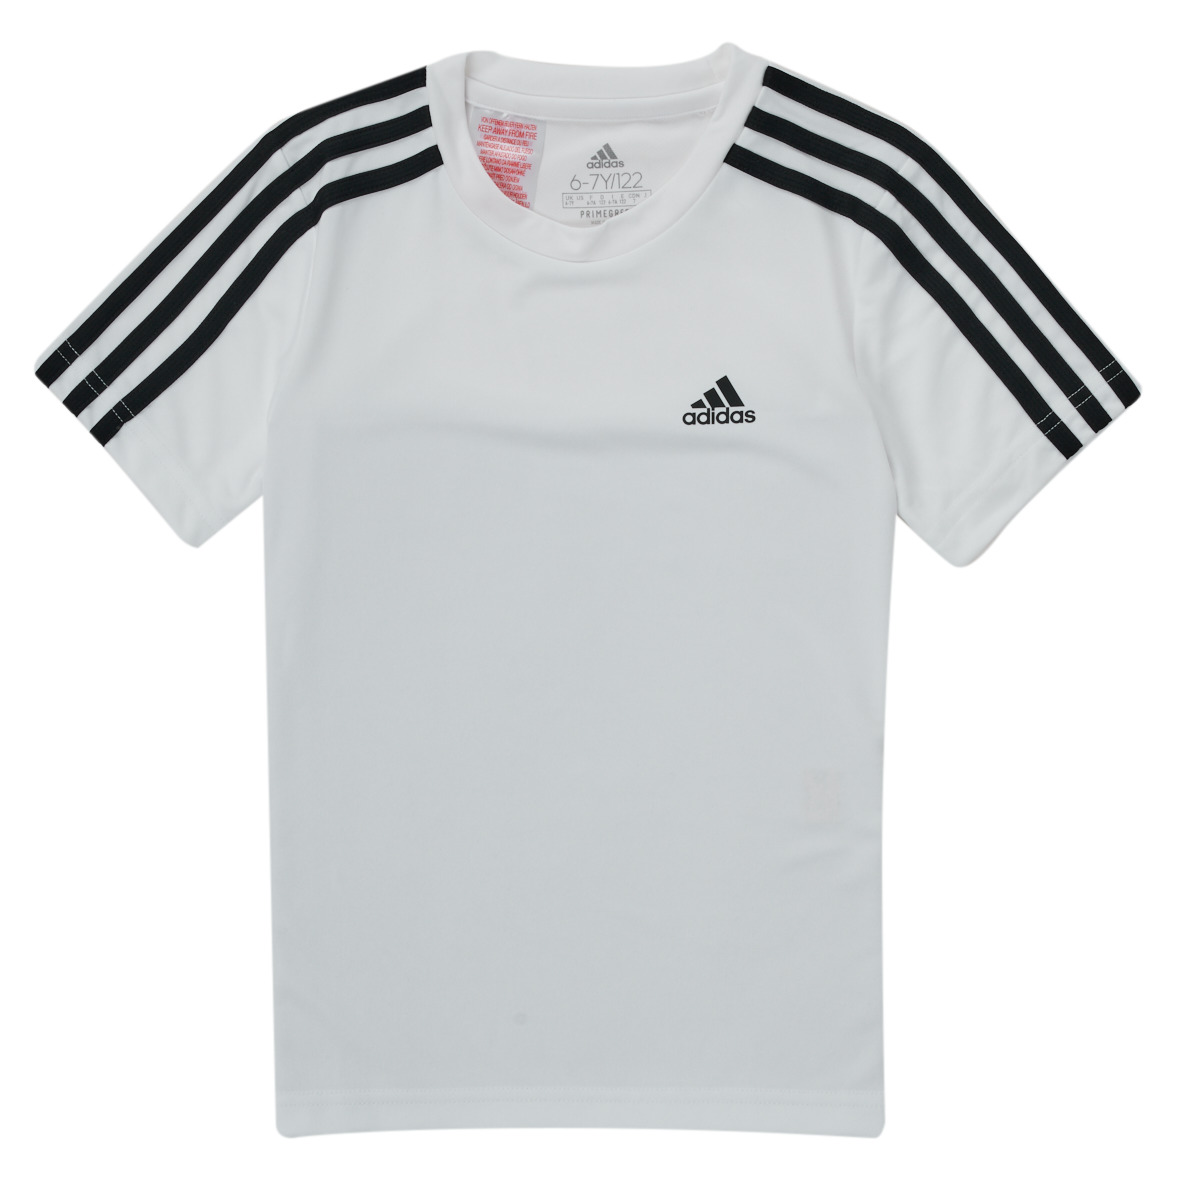 Adidas Sportswear Blanc / Noir BRETEZ XVS83qNW